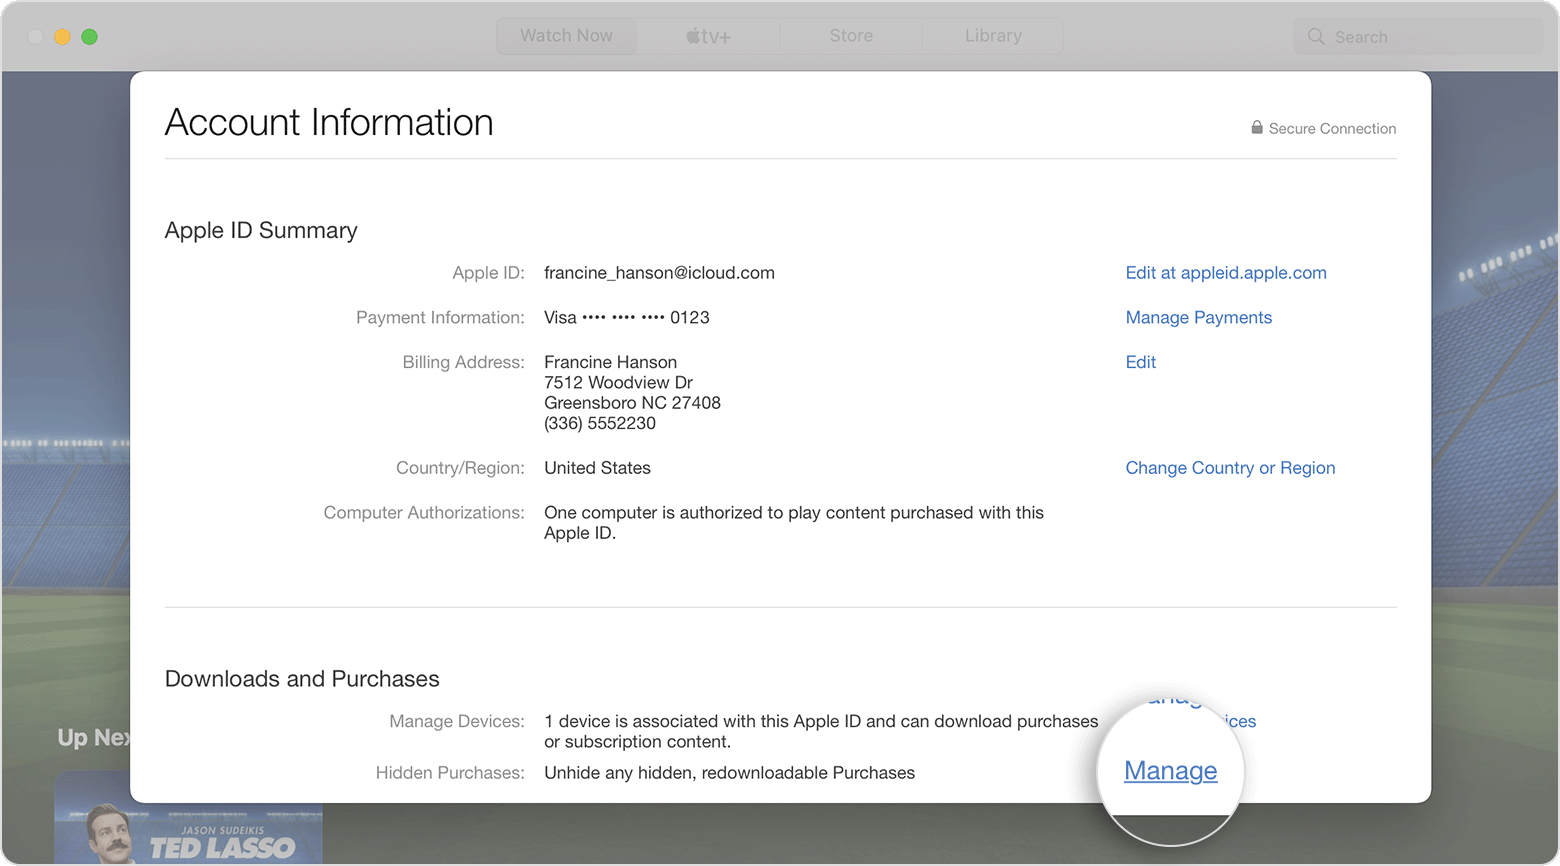 Mac 上的“下载和购买项目”部分中显示了“管理”按钮的位置